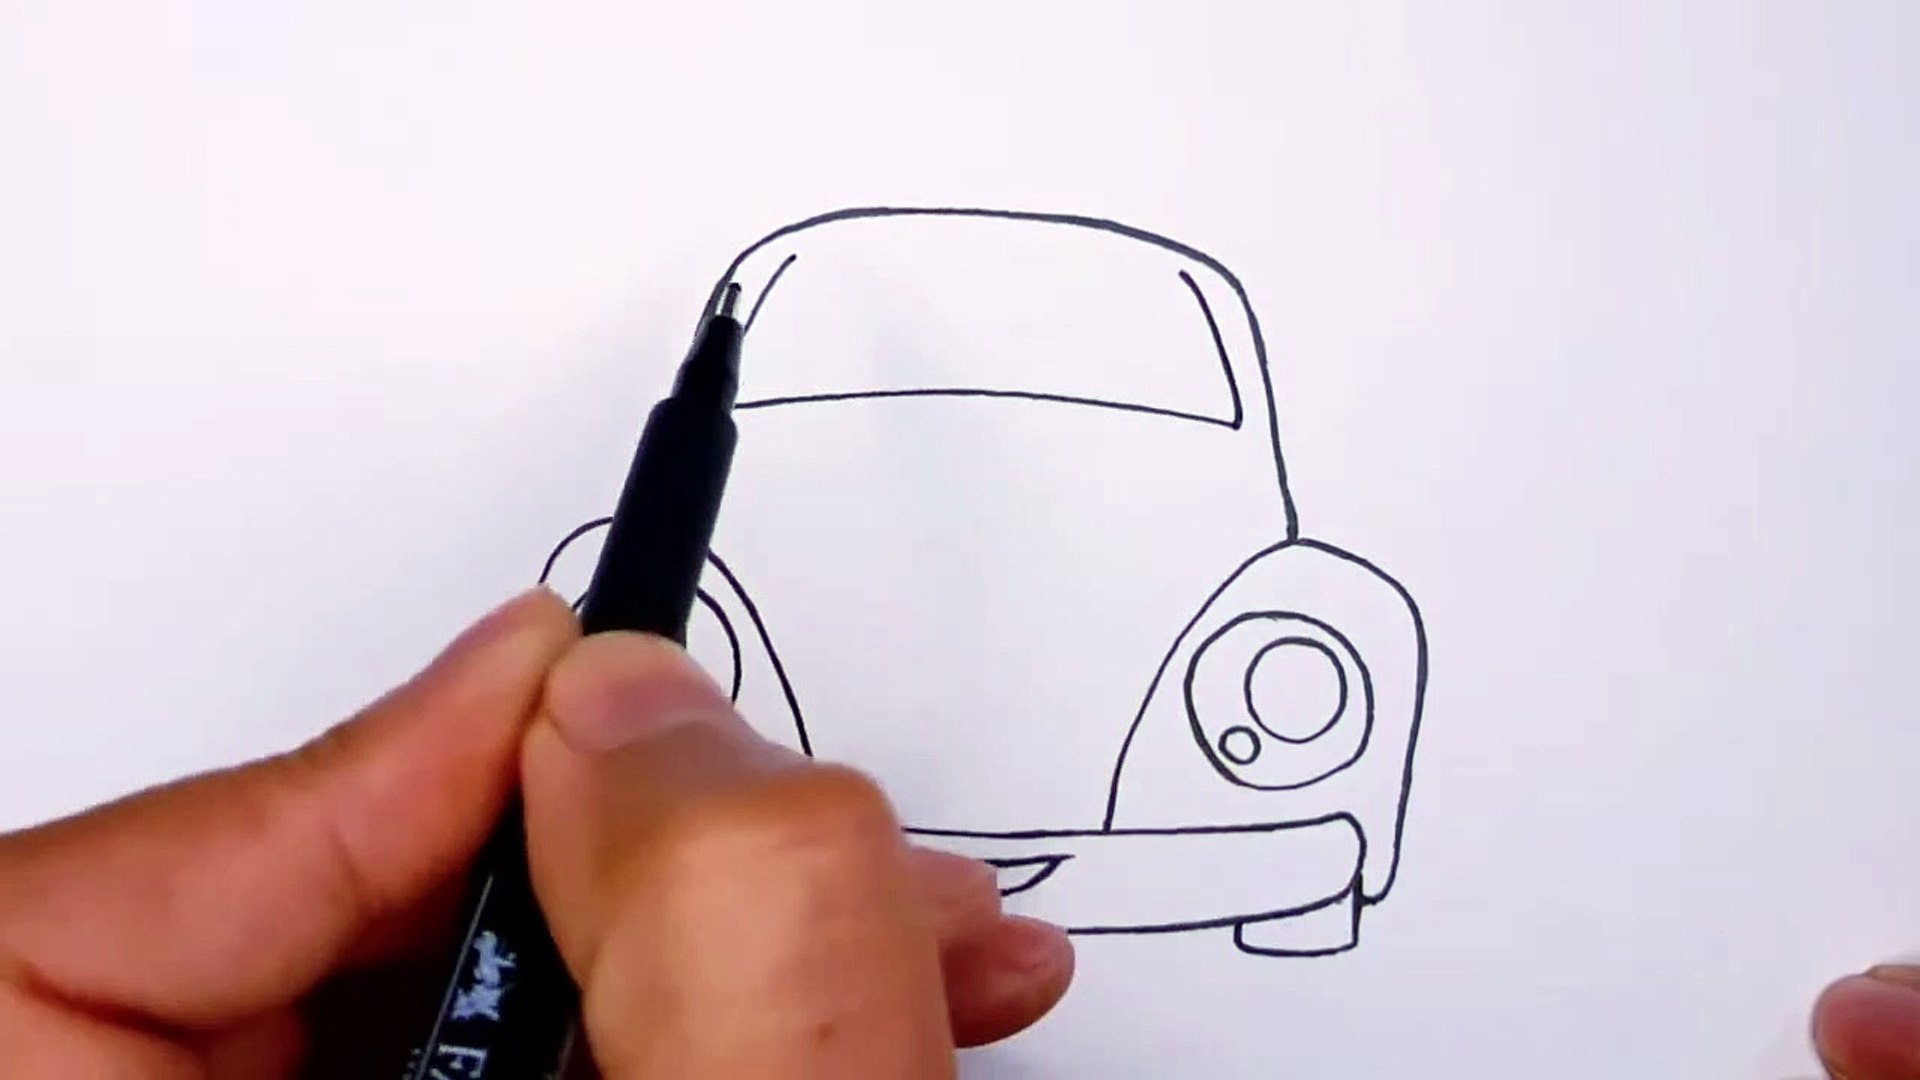 رسم سهل | كيفية رسم سيارة بطريقة سهلة مع التلوين | رسم بالرصاص | كراسات رسم  | تعليم الرسم - video Dailymotion